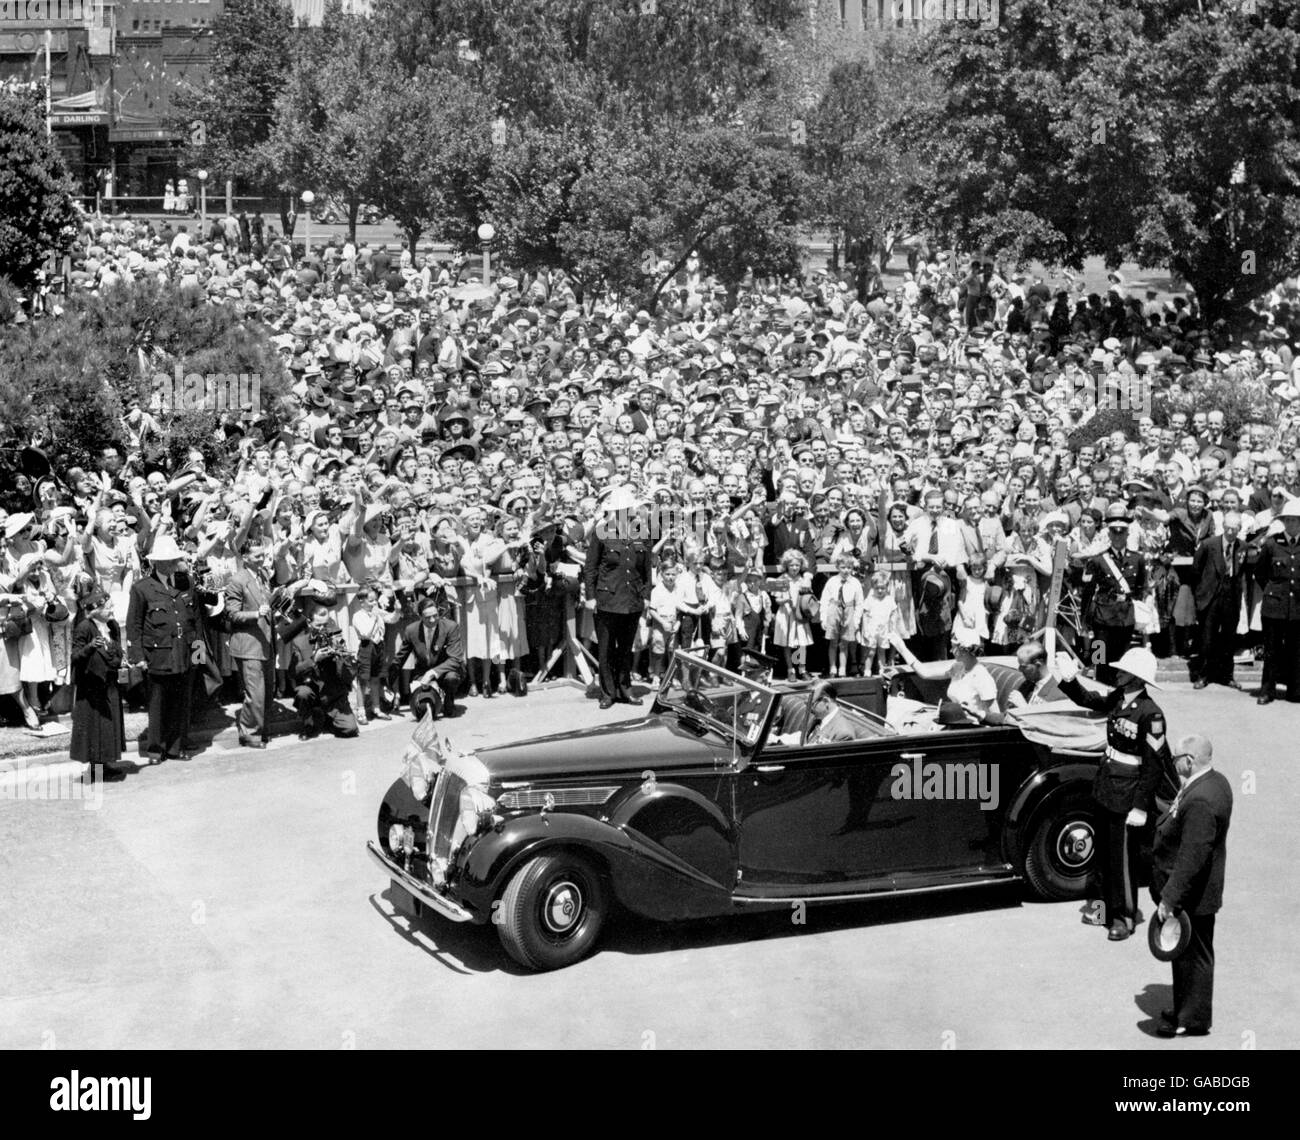 Queen Elizabeth II und der Duke of Edinburgh winken den Massen zu, während sie in einem Daimler DE36 Cabrio zum Repatriierungskrankenhaus in Concord, Sydney fahren, in den frühen Stadien ihrer Australienreise. Stockfoto